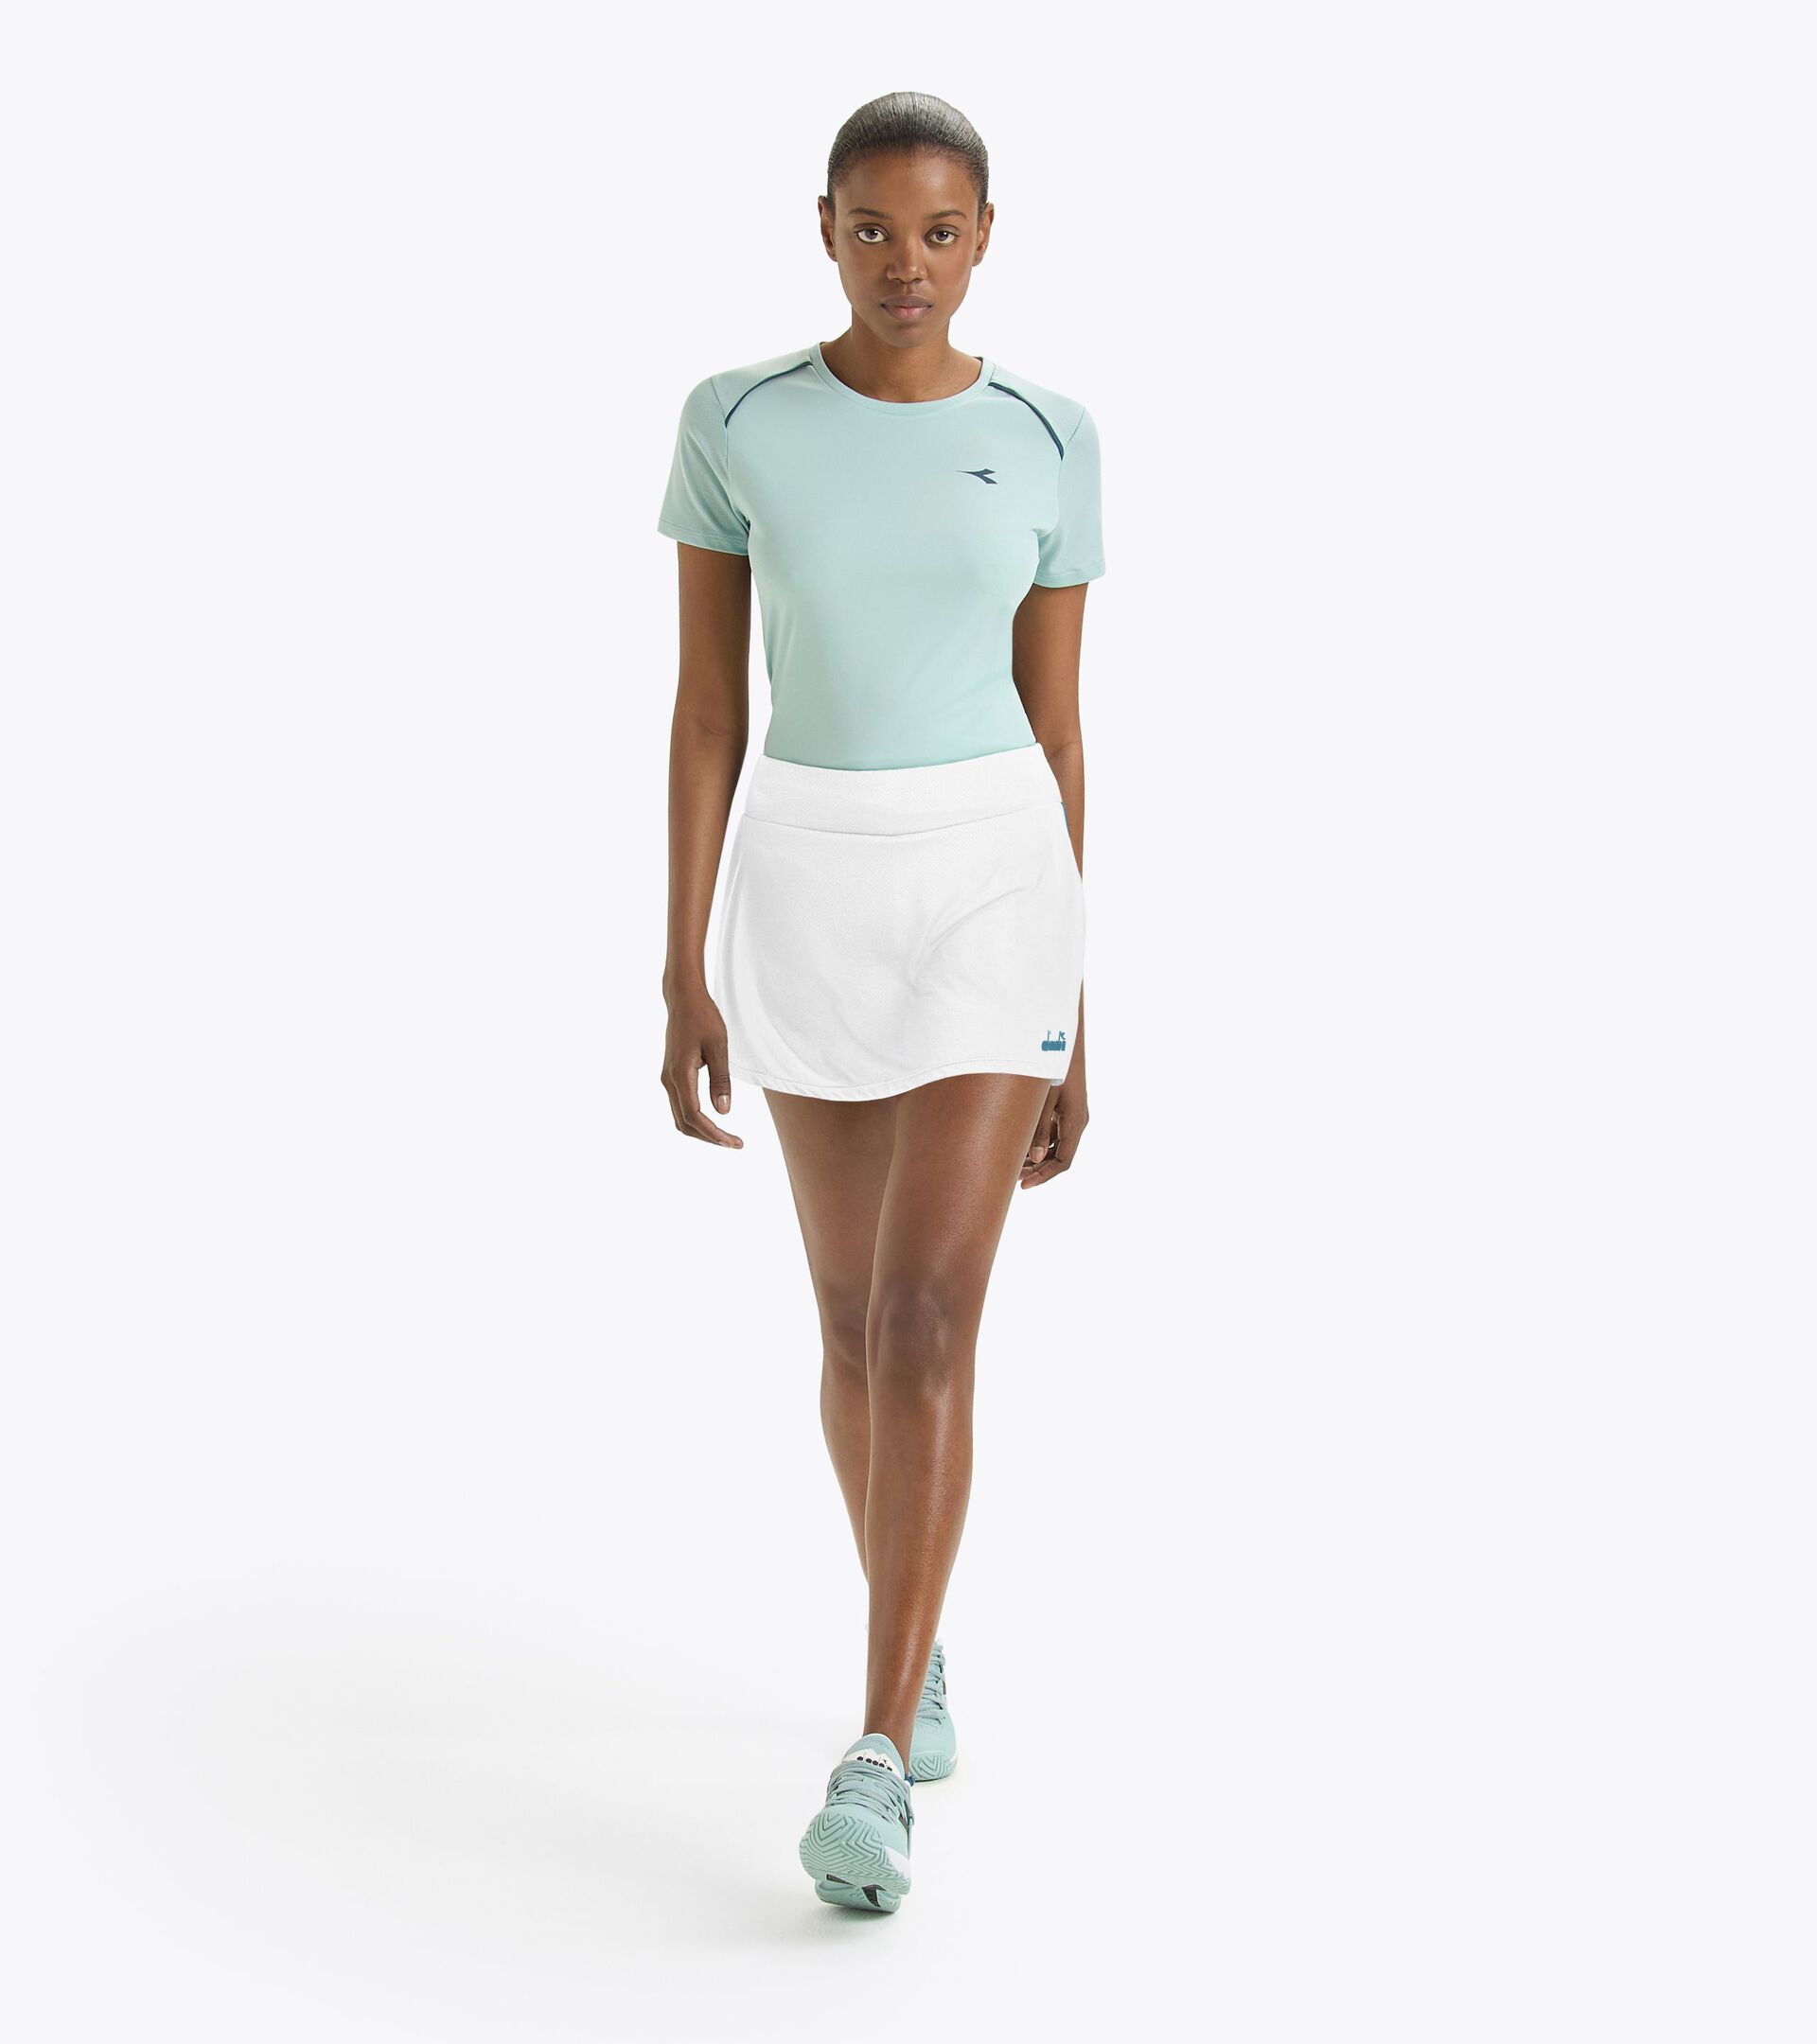 Tennis skirt - Women’s
 L. SKIRT CORE OPTICAL WHITE - Diadora